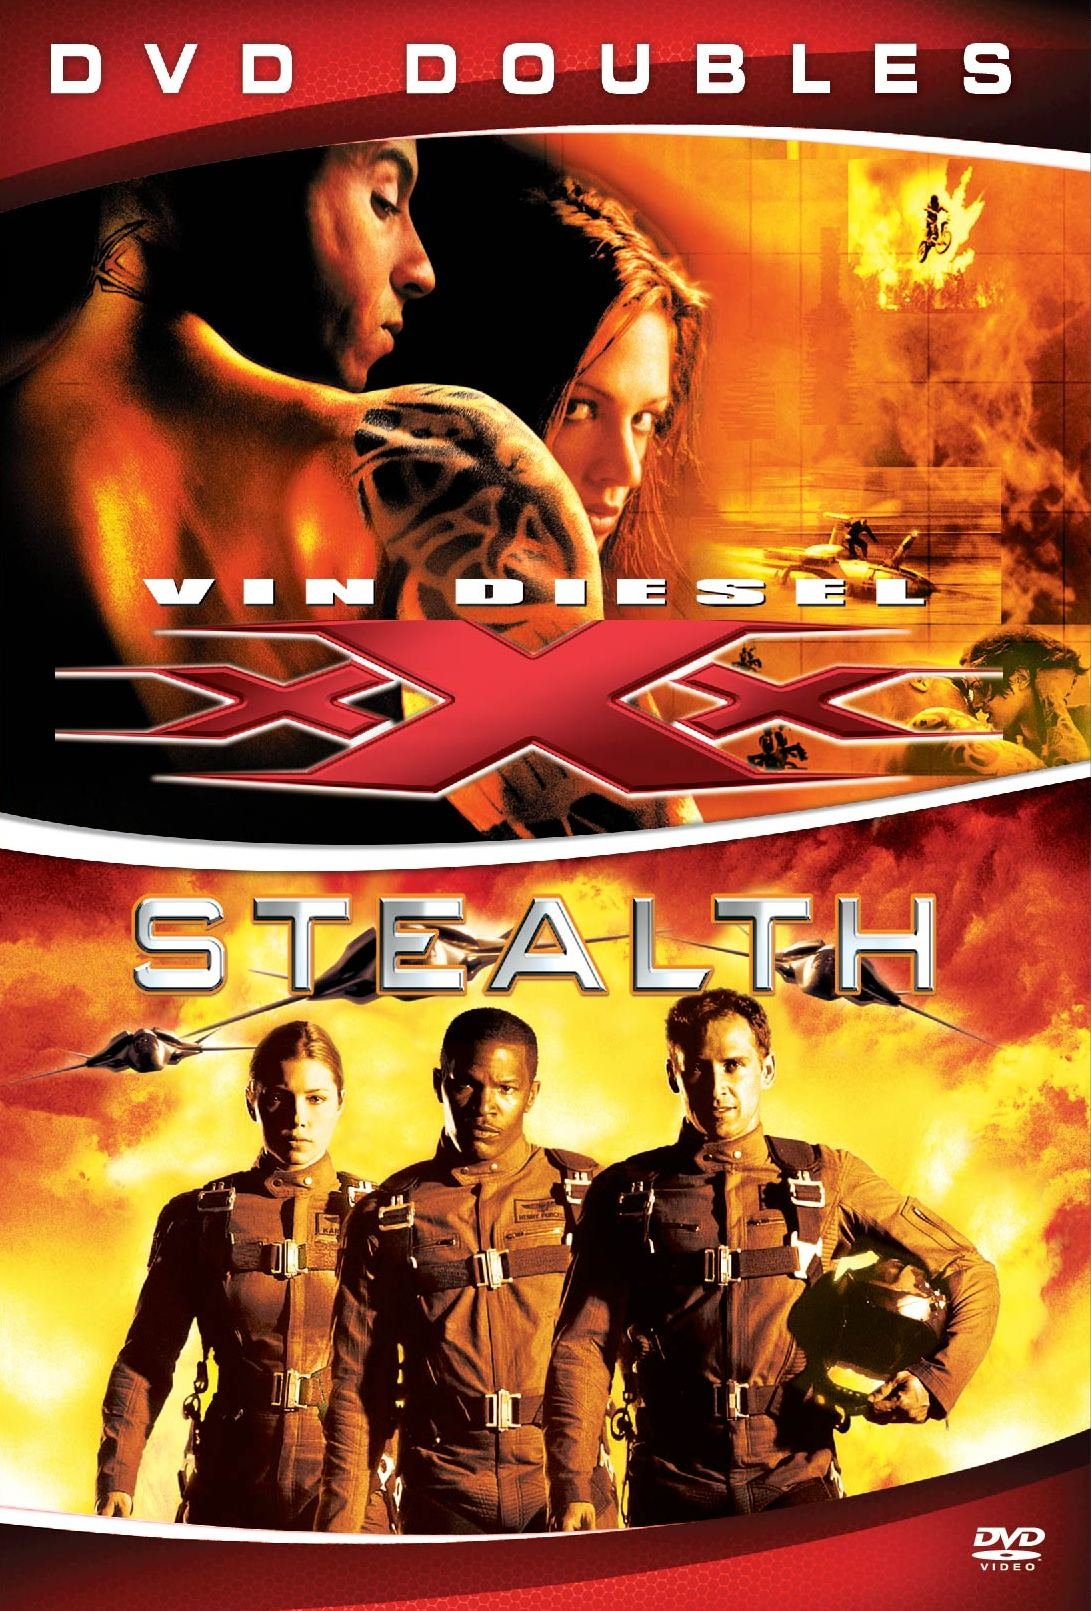 xxx-stealth-movie-purchase-or-watch-online